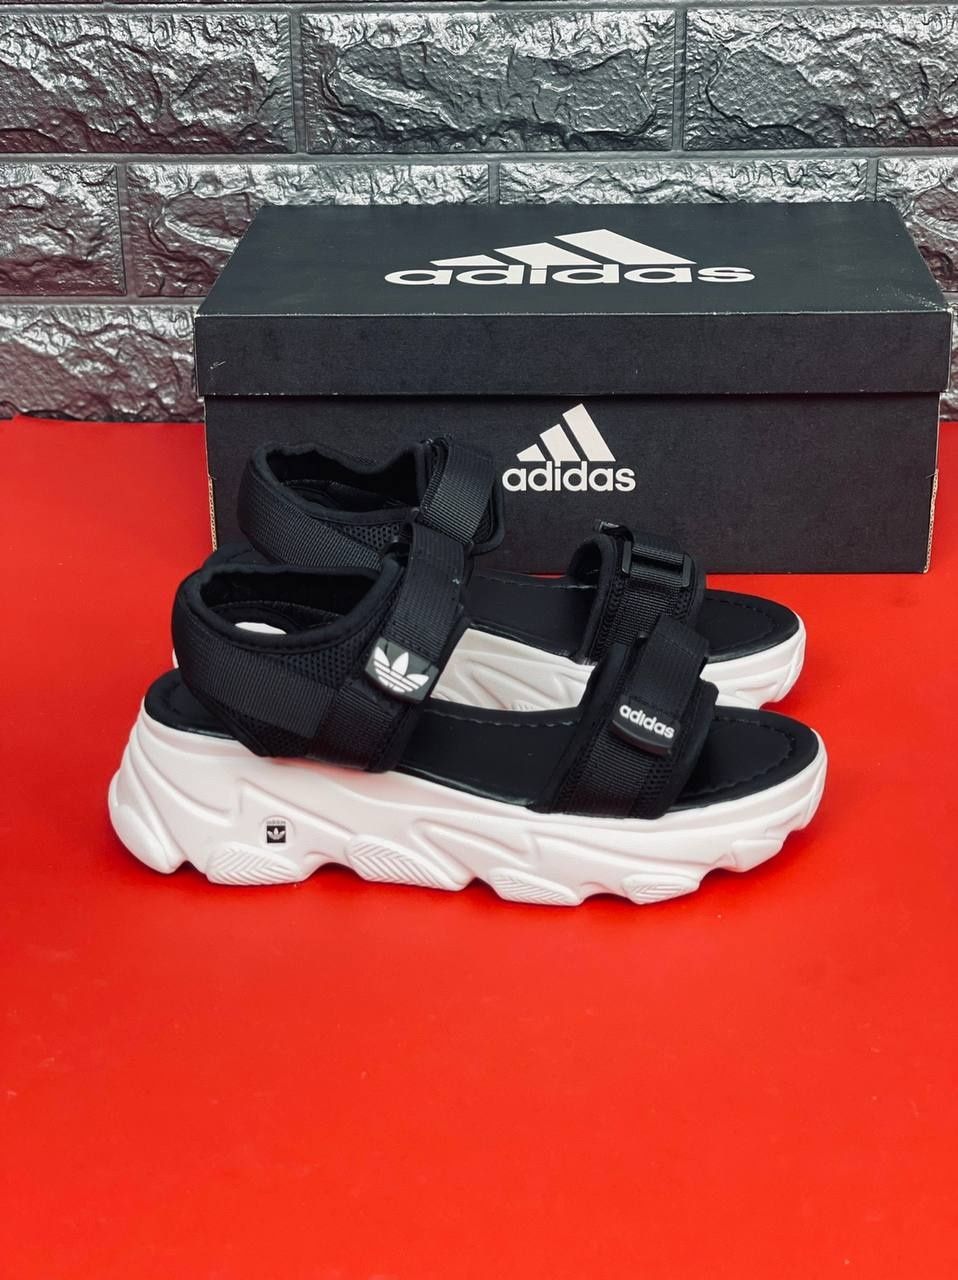 ЖЕНСКИЕ босоножки Adidas сандалии чёрного цвета Адидас на липучке35-40